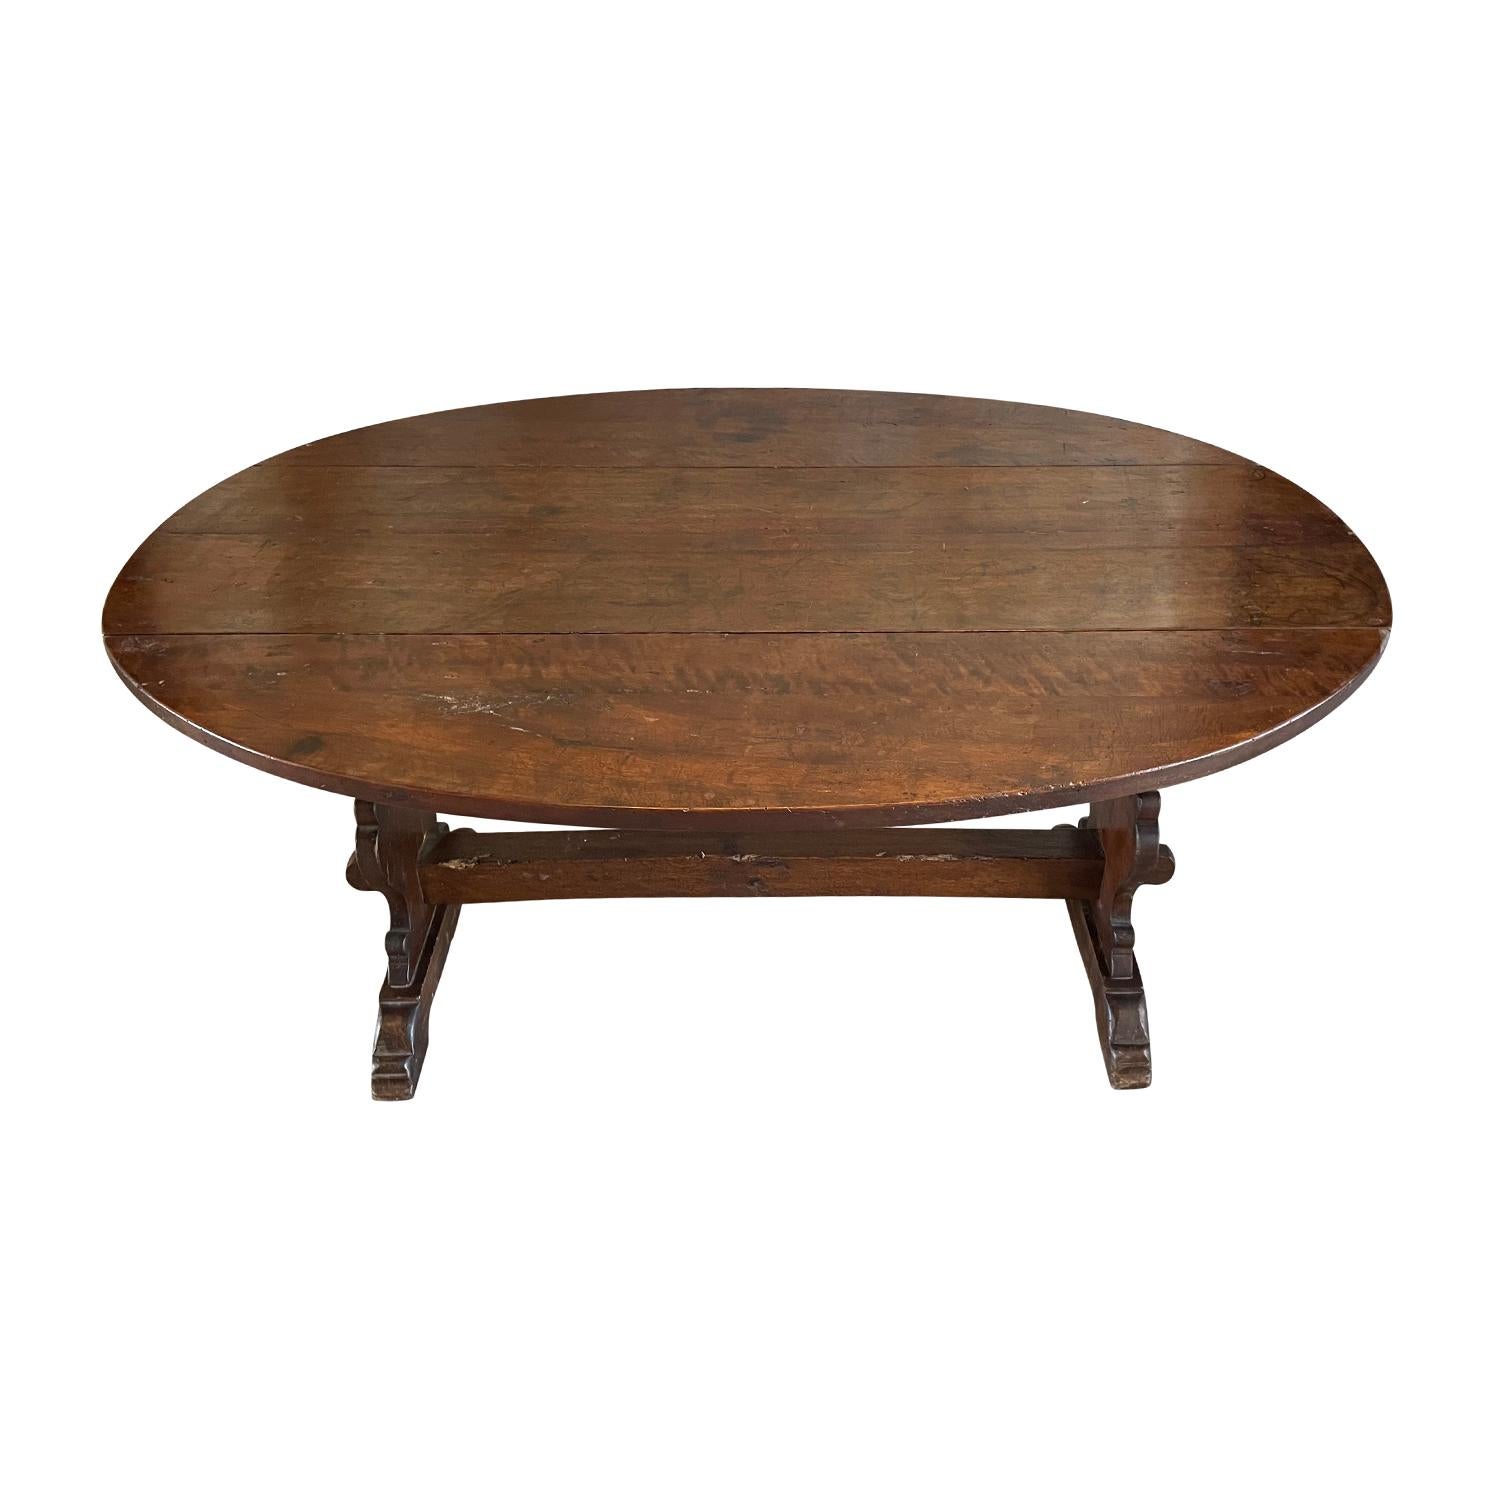 Ein antiker italienischer kleiner ovaler Esstisch mit handgewachster Oberfläche. Dieser toskanische Tisch ist aus handgefertigtem Nussbaumholz gefertigt und wird von einem massiven Gestell getragen, das sich in gutem Zustand befindet. Die beiden